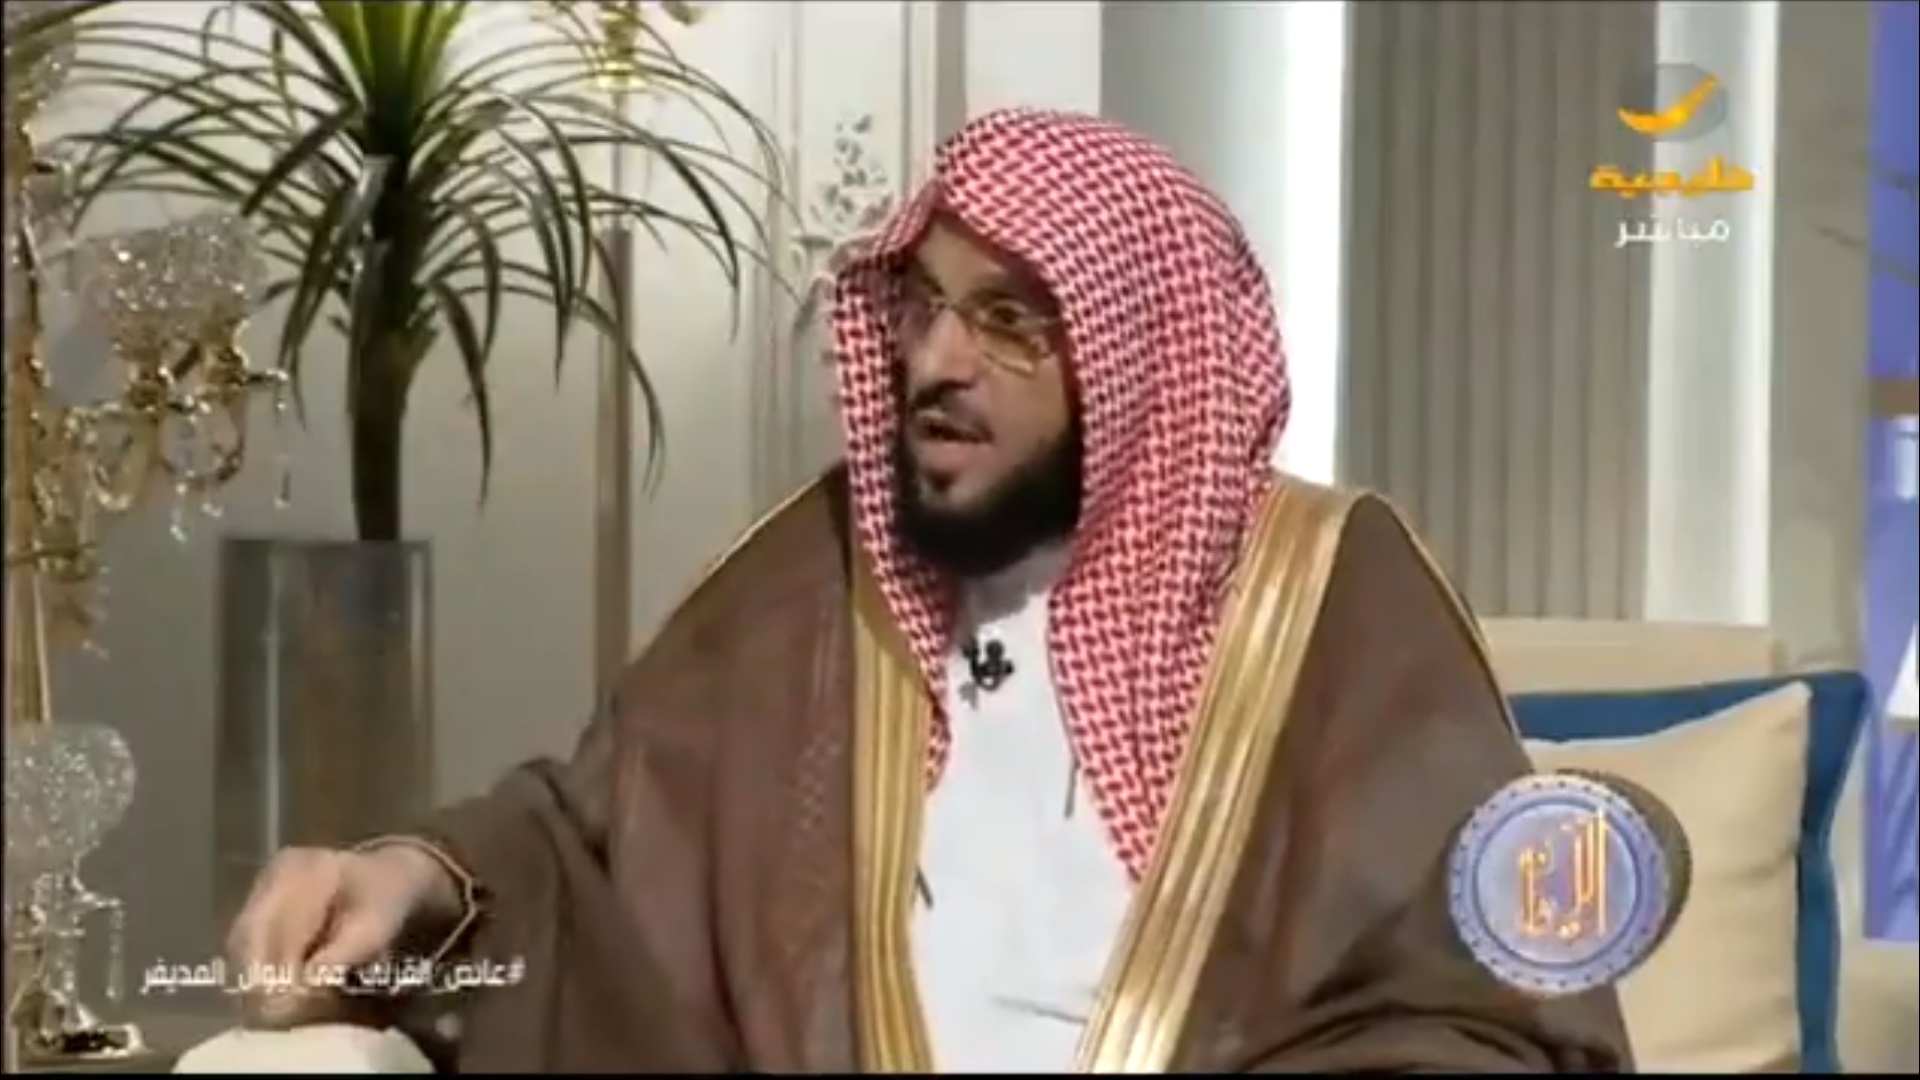 الشيخ عائض القرني يعتذر للمجتمع السعودي باسم الصحوة: الأخطاء ضيقت على الناس